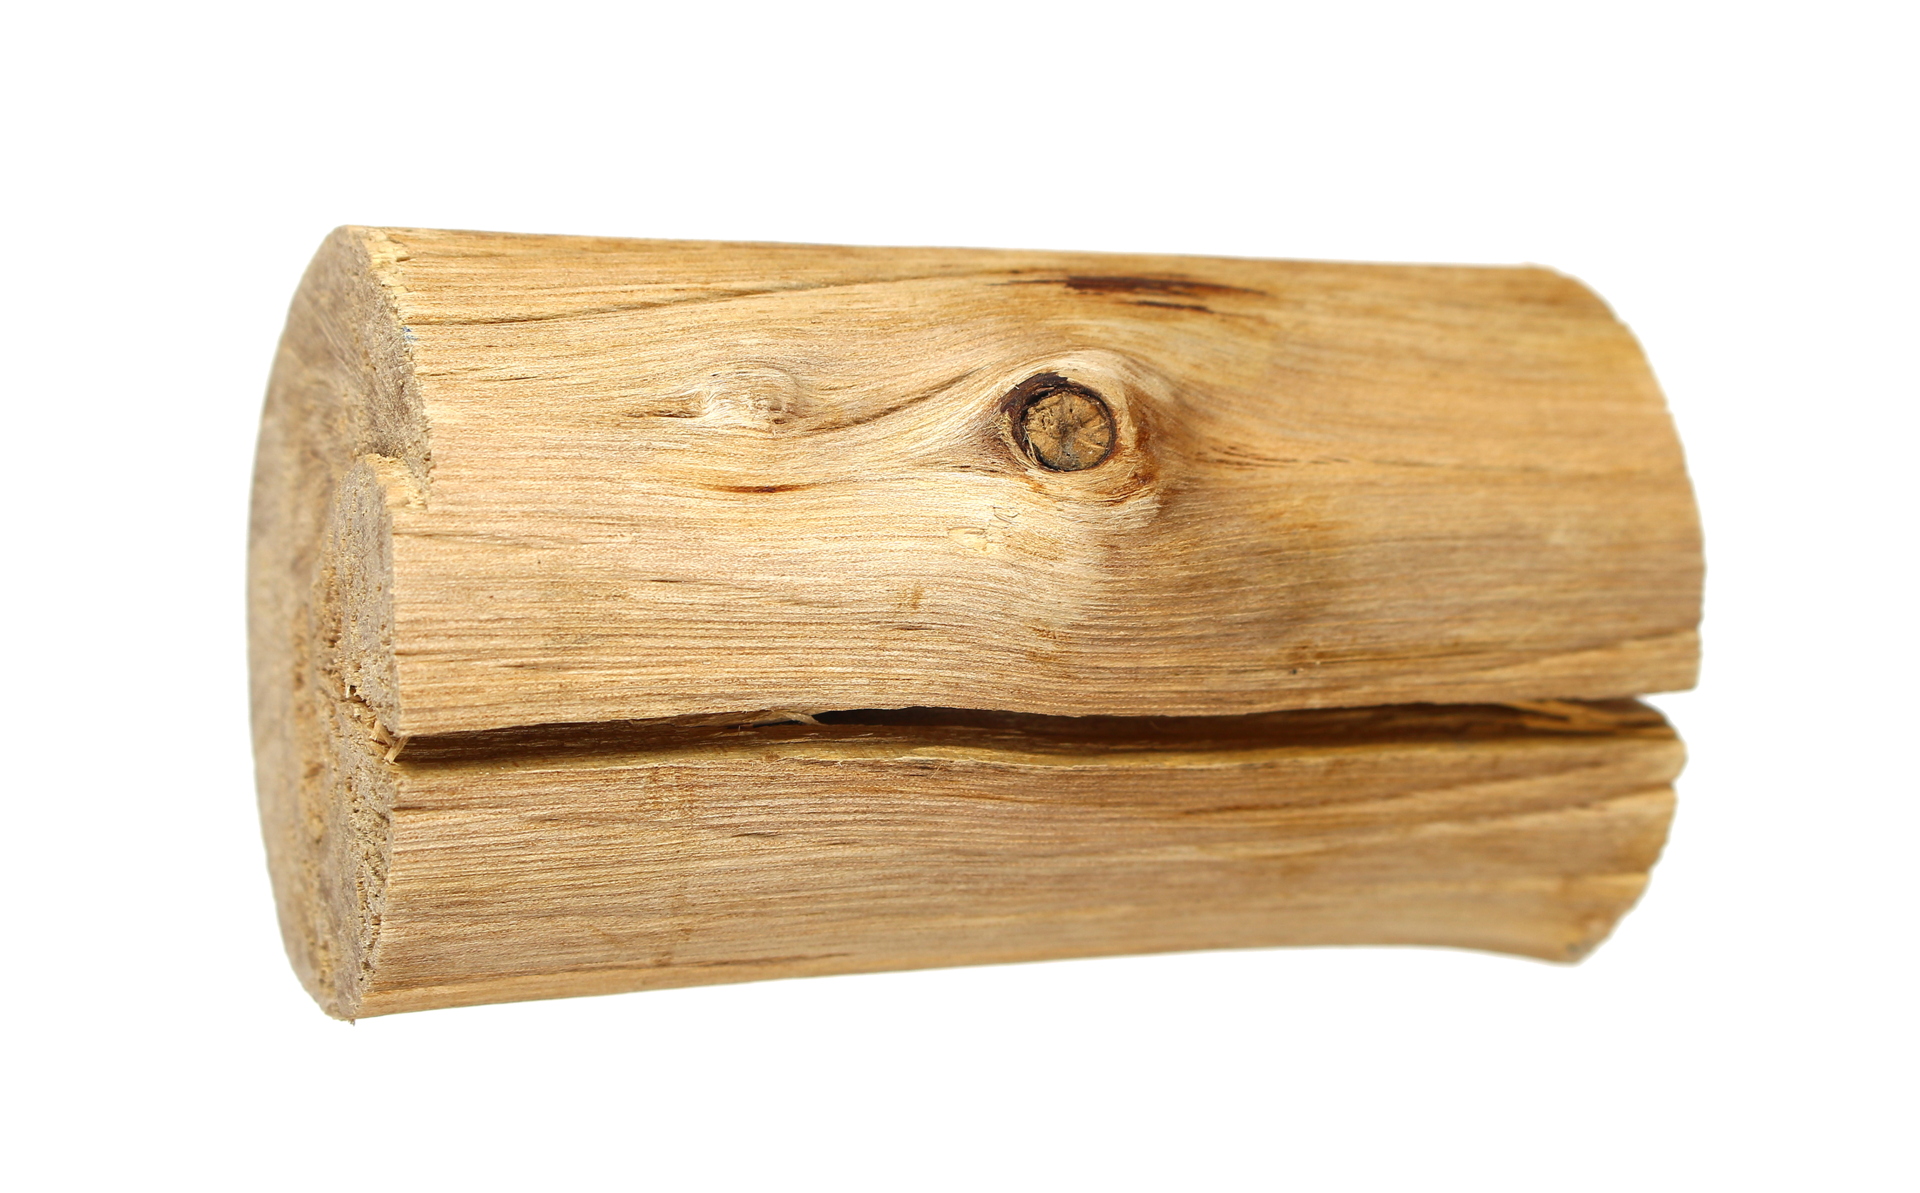 Gỗ cứng khô được xem là loại gỗ đẹp nhất, được sử dụng nhiều trong trang trí nội thất. Với chất lượng vượt trội và độ bền cao, gỗ cứng khô sẽ mang đến cho không gian của bạn sự đẳng cấp và sang trọng.